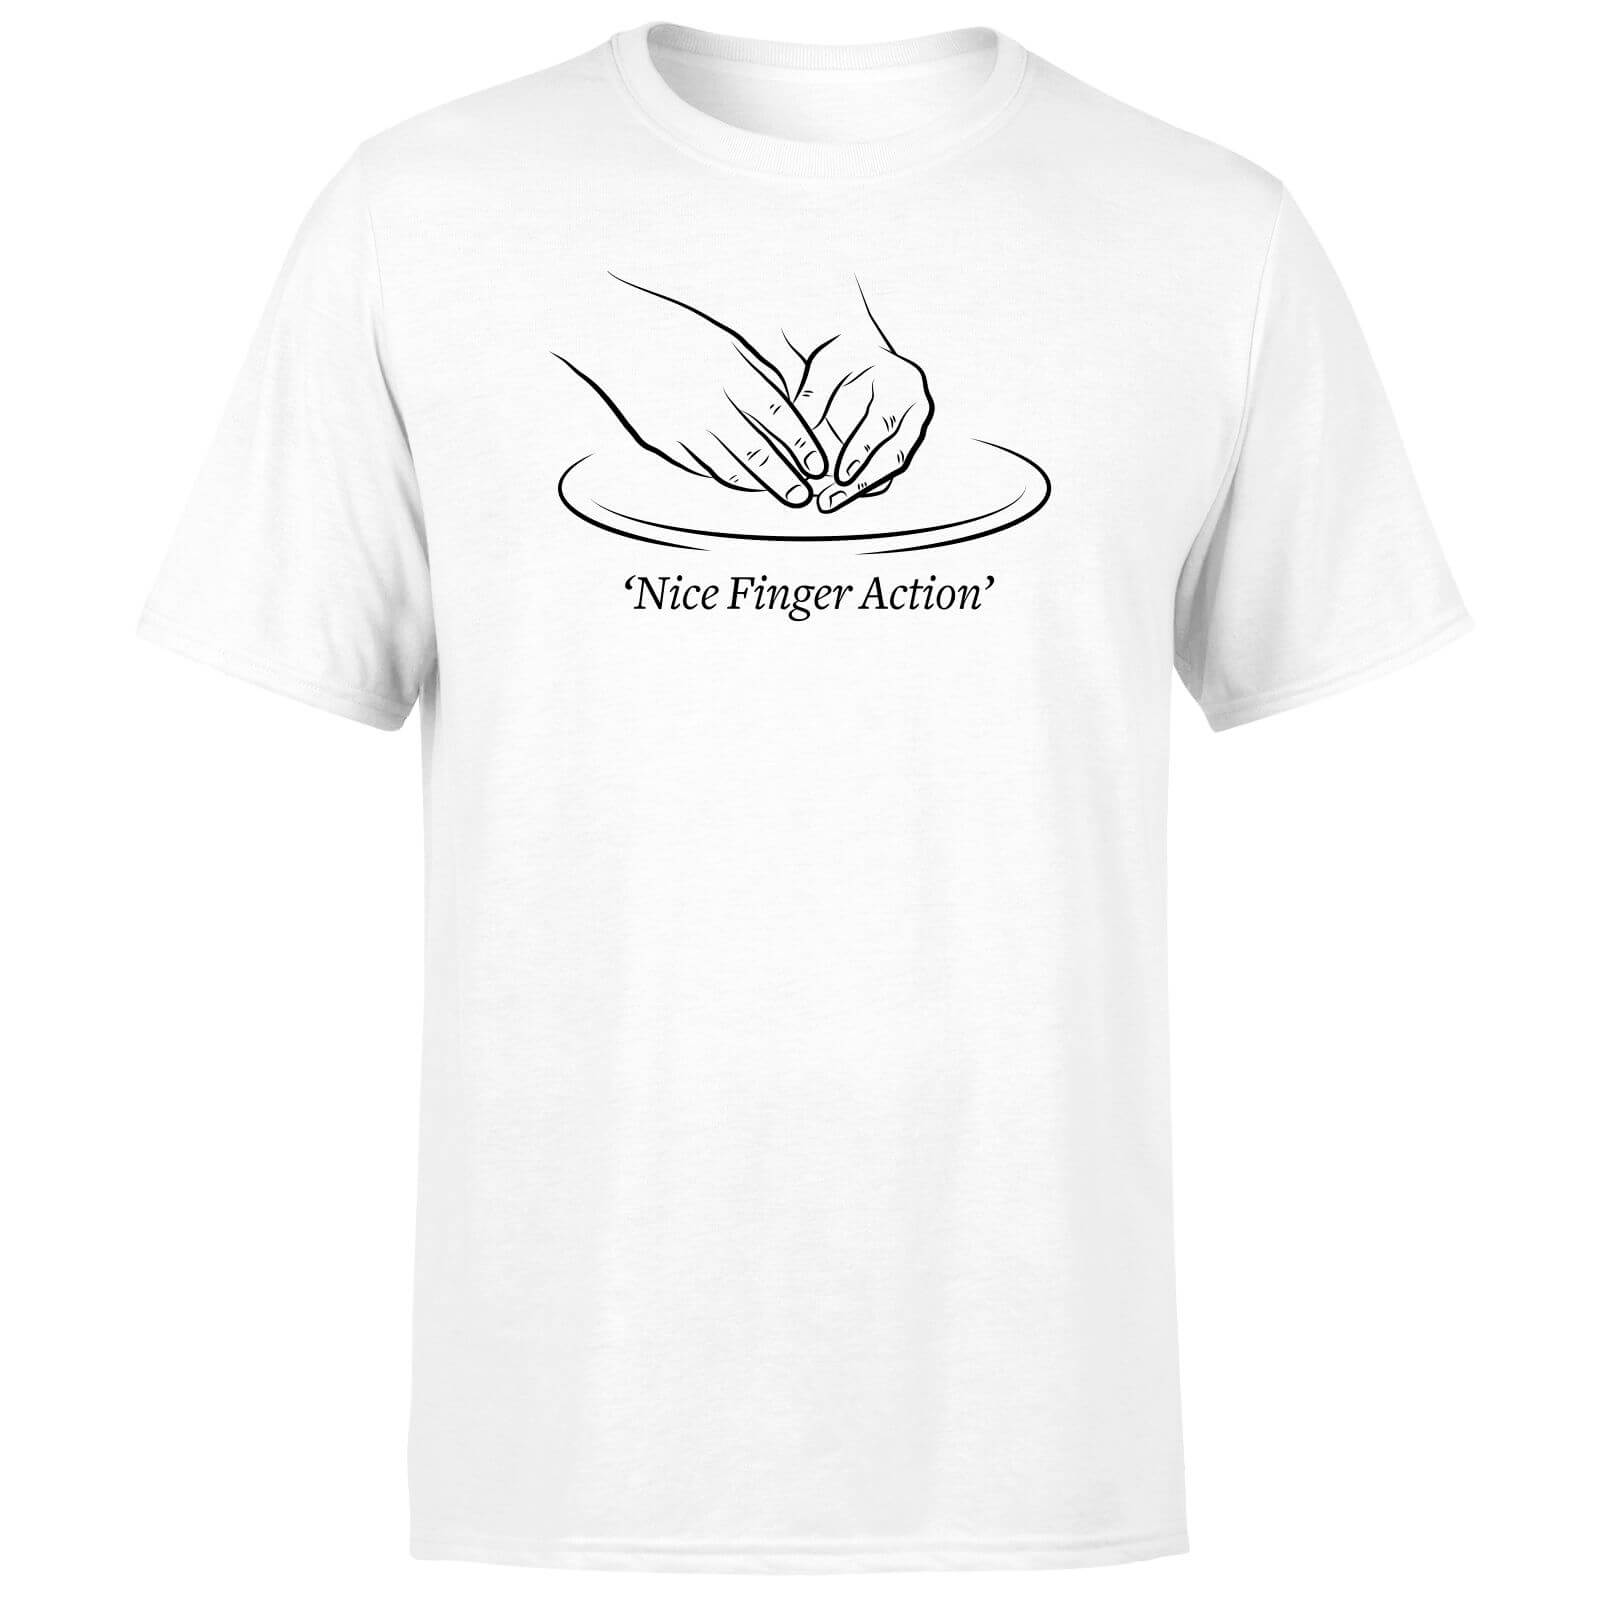 Nice Finger Action Men's T-Shirt - White - 3XL - White